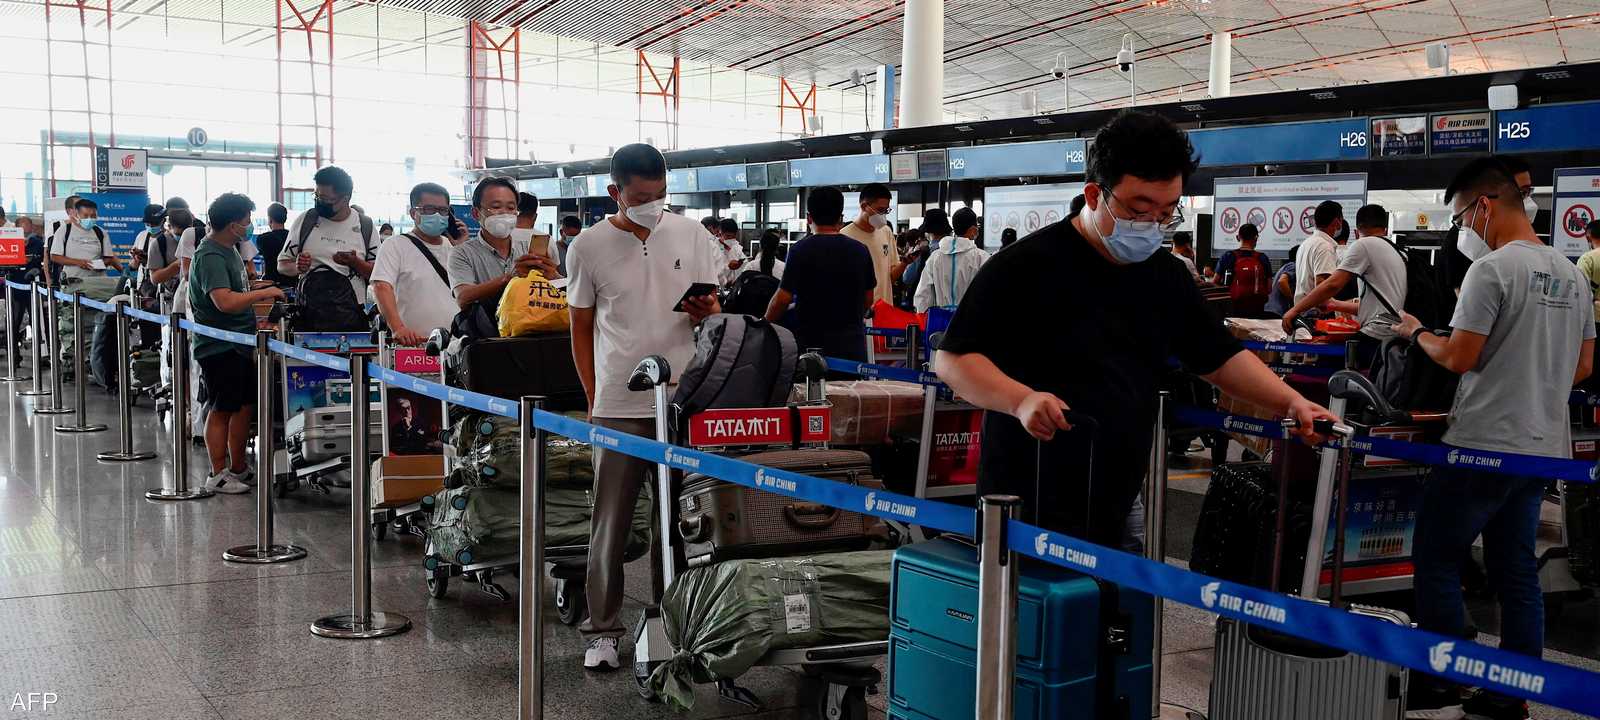 توقعات بسفر ملايين الصينيين للسياحة بعد إلغاء قيود كورونا